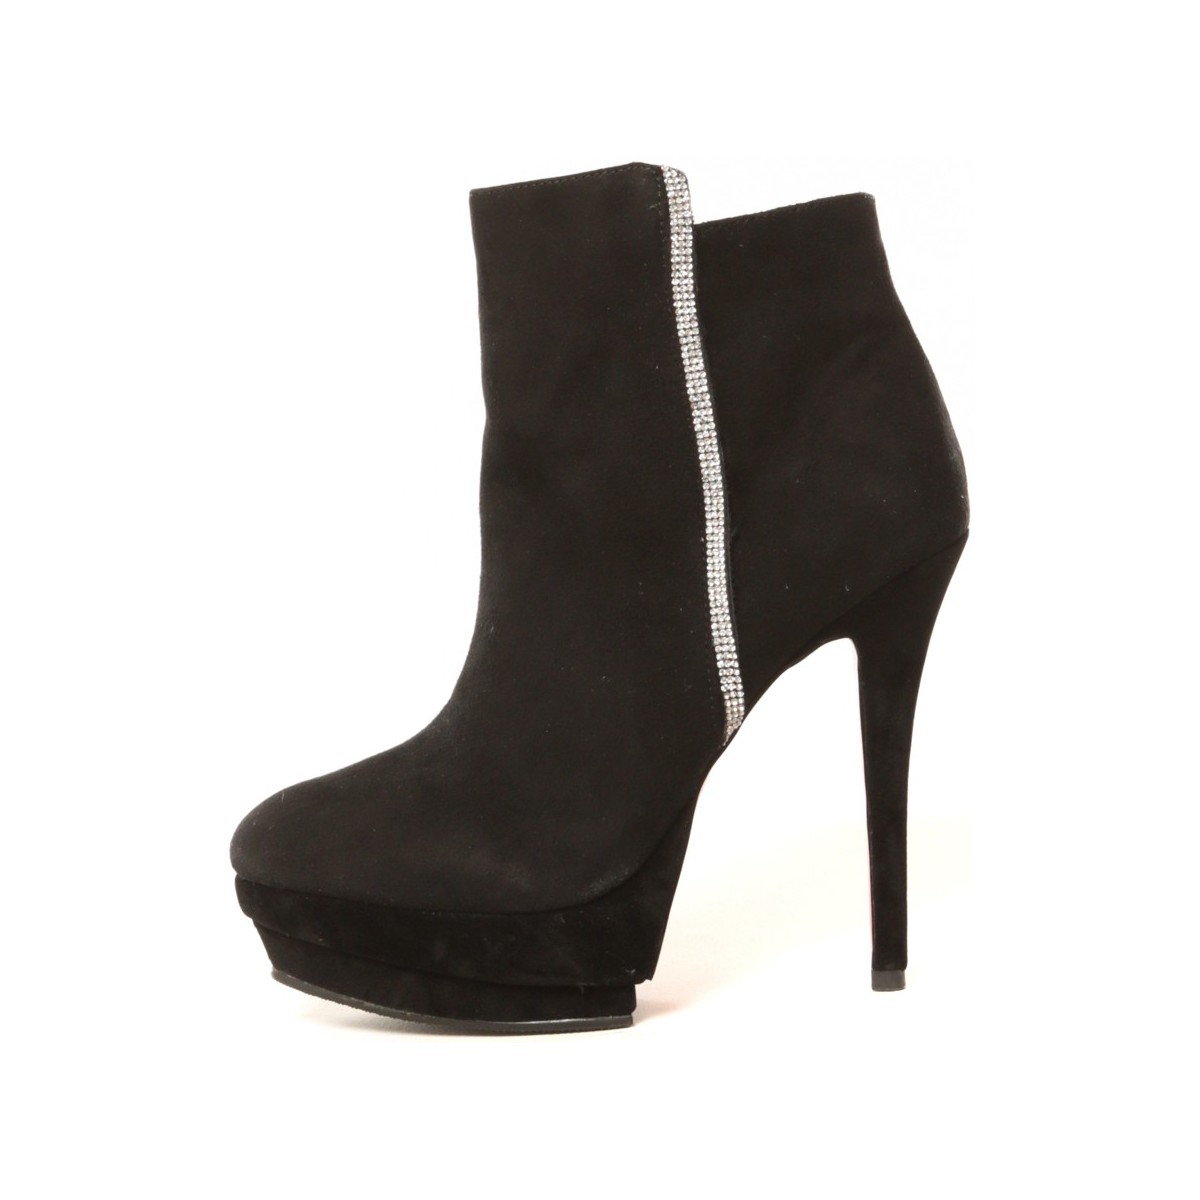 Chaussures Femme Rubies Spikey Thigh-High Basketball Boots Bottines Fabienne Noir Noir